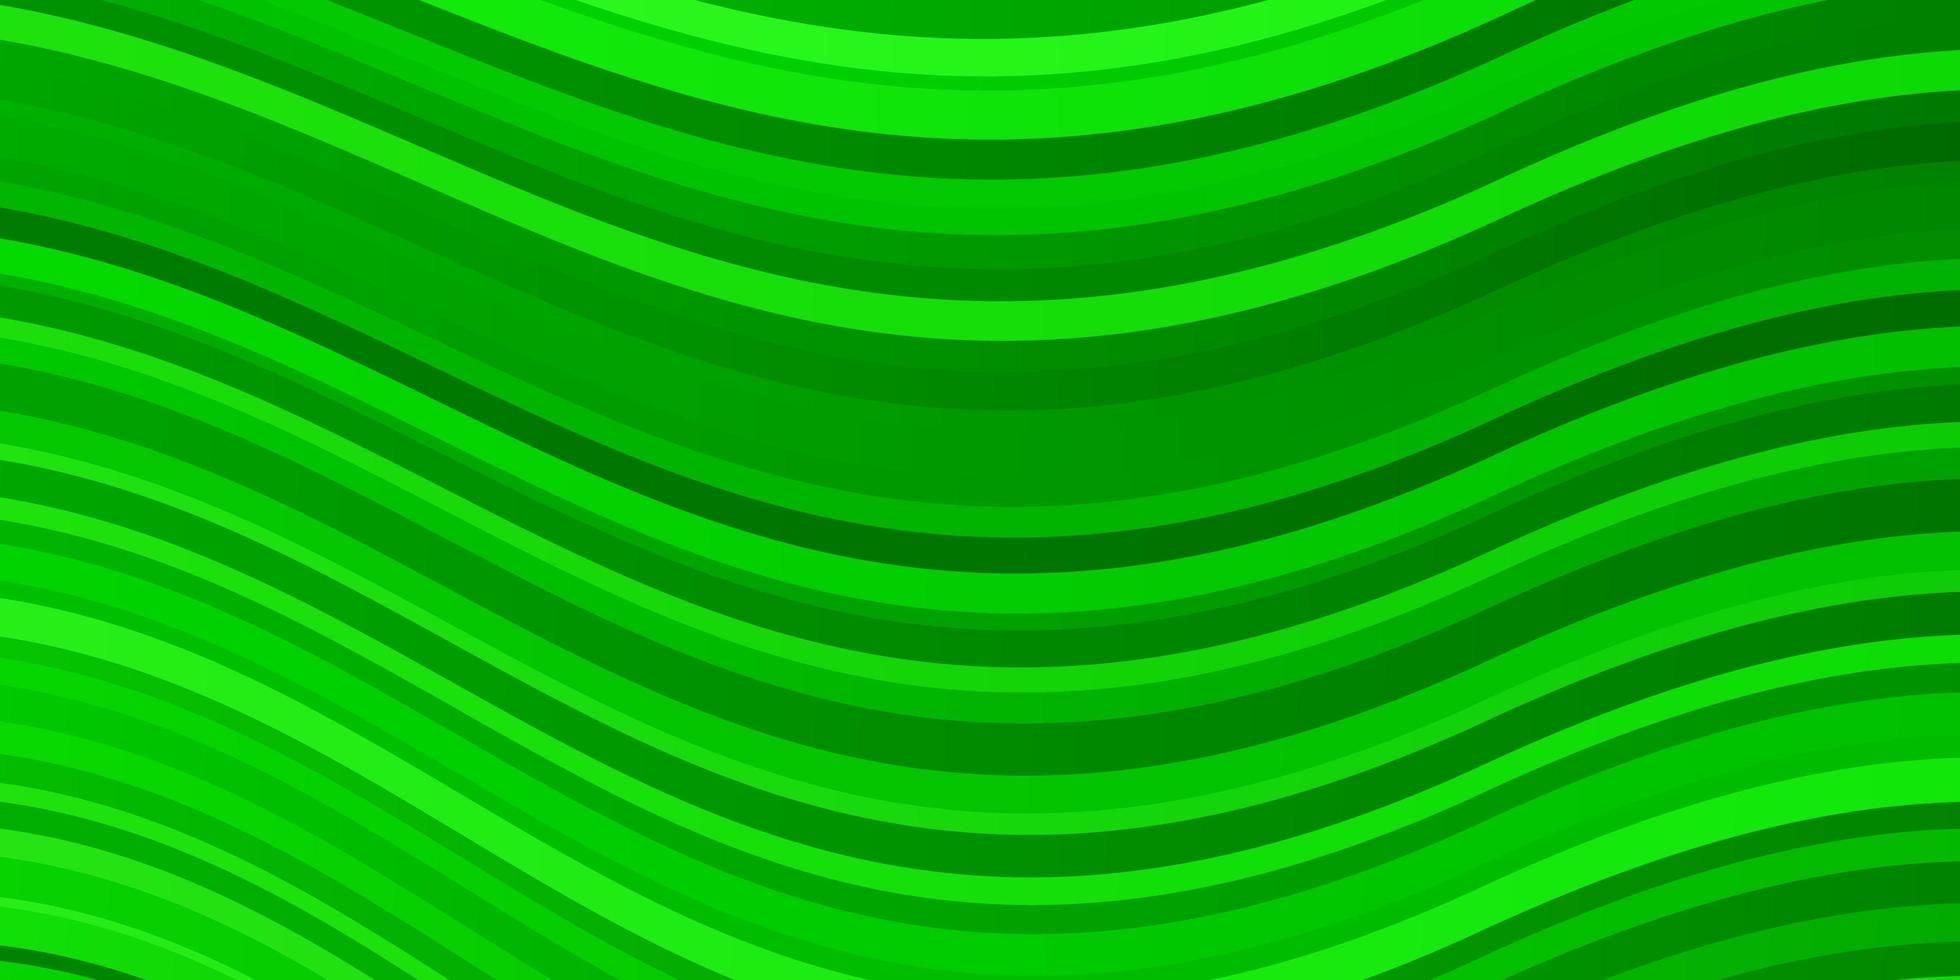 ljusgrön vektorbakgrund med böjda linjer. lutningsillustration i enkel stil med bågar. smart design för dina kampanjer. vektor